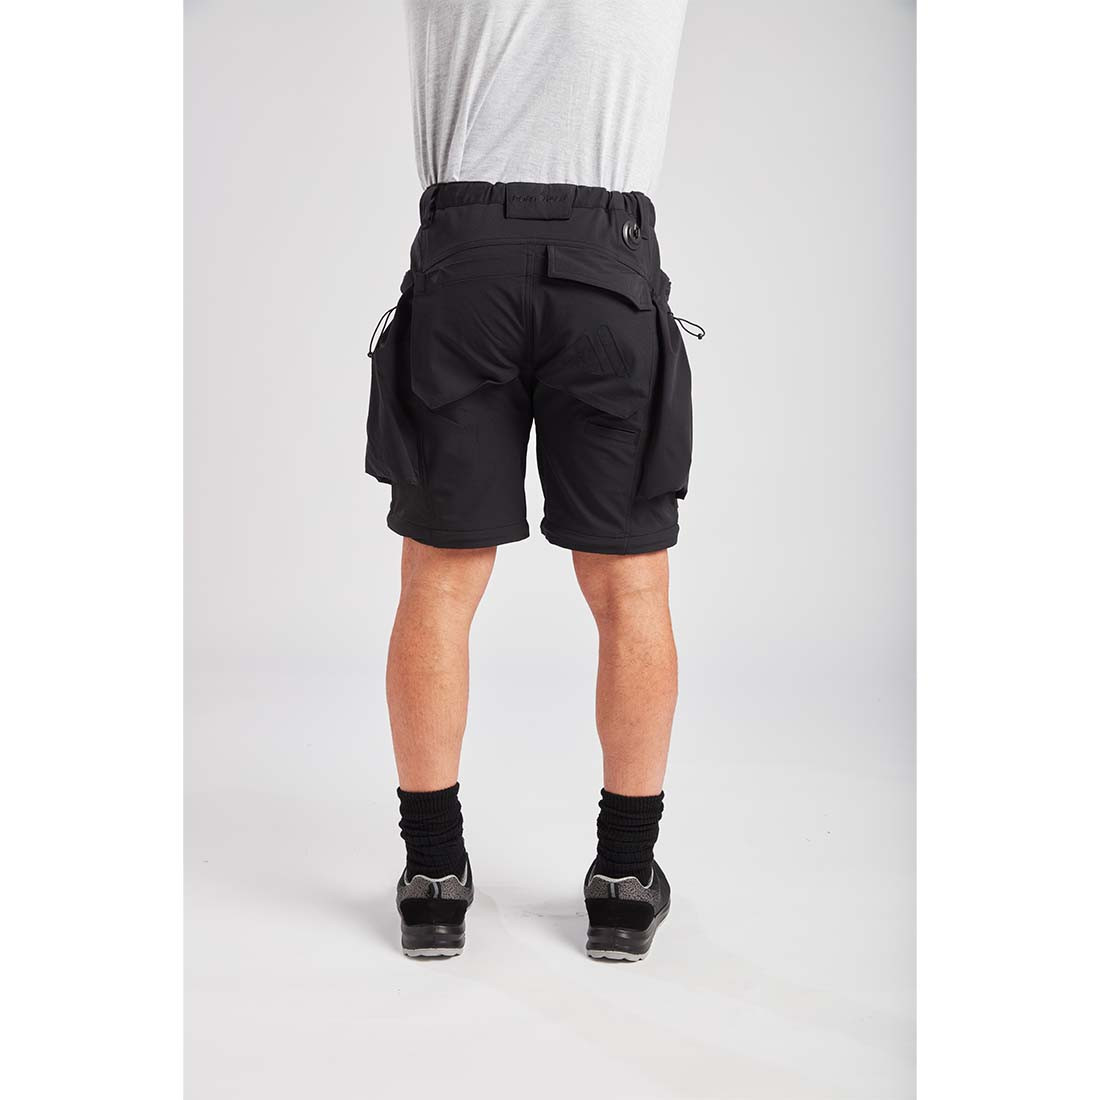 Pantalon Modulable ultime 3 en 1 - Les vêtements de protection